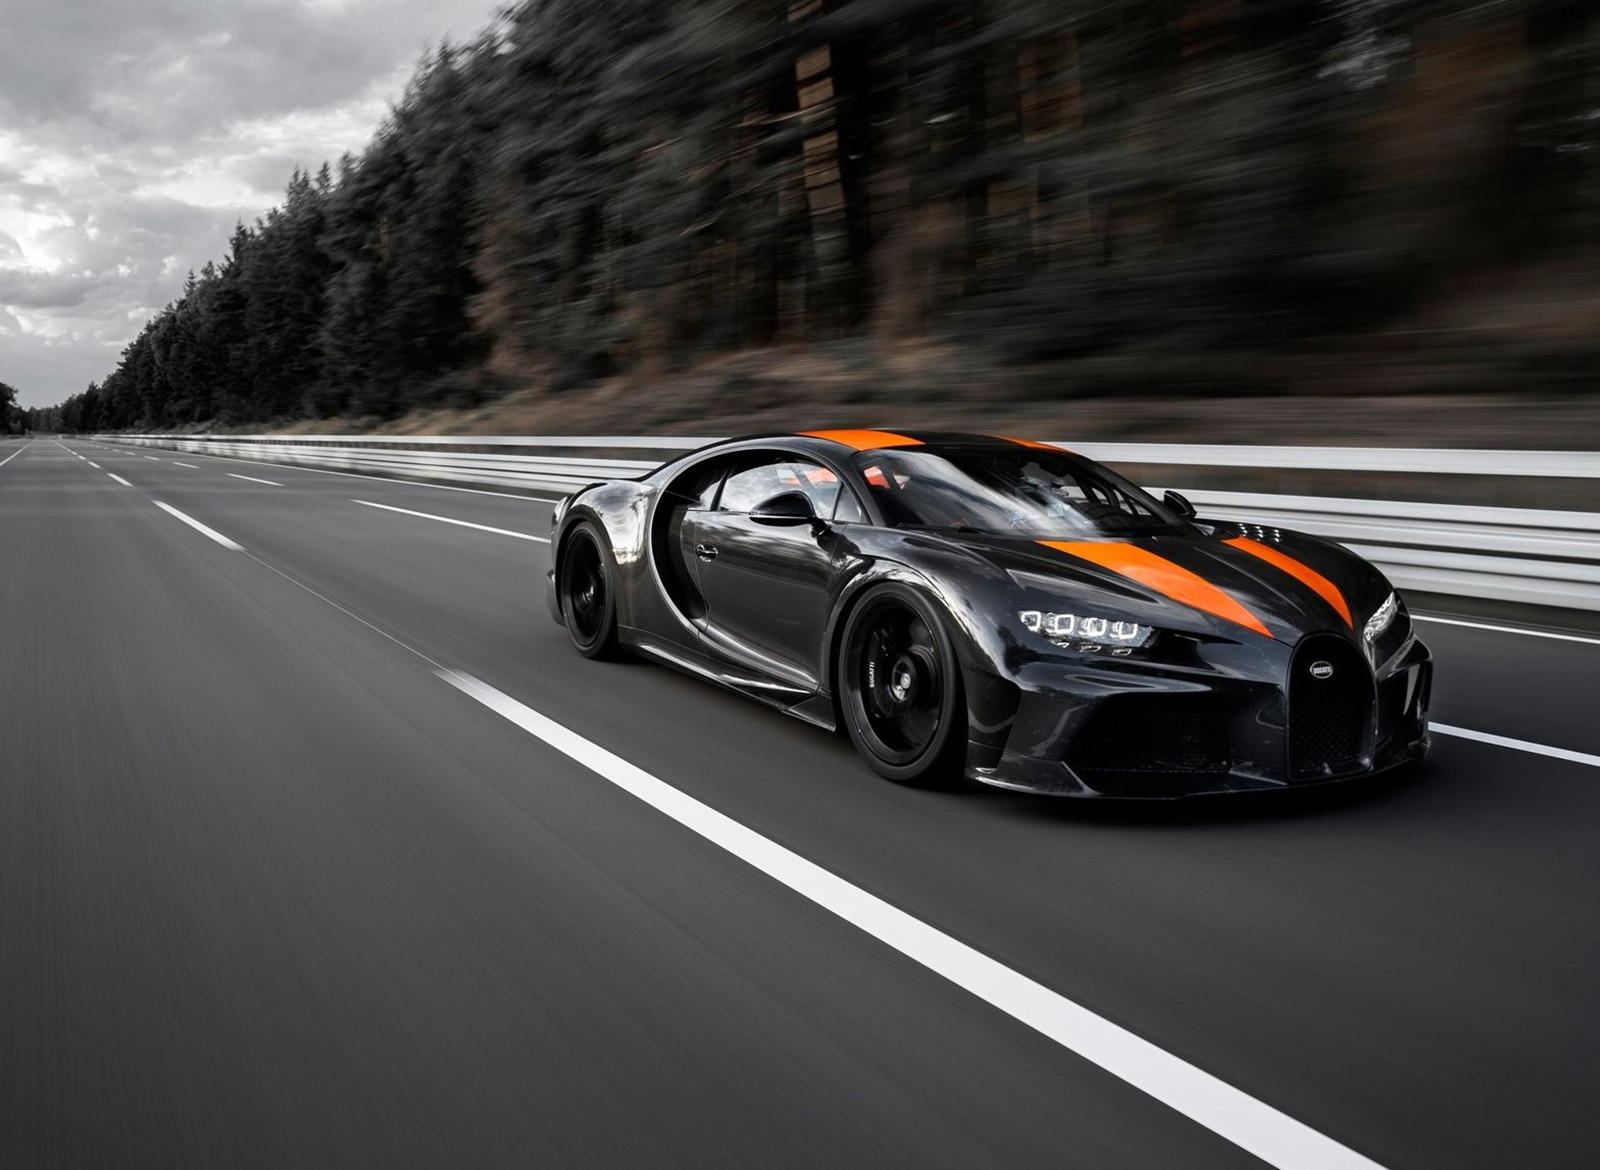 Но для Bugatti это две совершенно разные машины, разработанные с уникальными конечными целями, и, чтобы дать нам больше понимания, дизайнер Фрэнк Хейл подробно остановился на том, что делает каждую из них особенной.